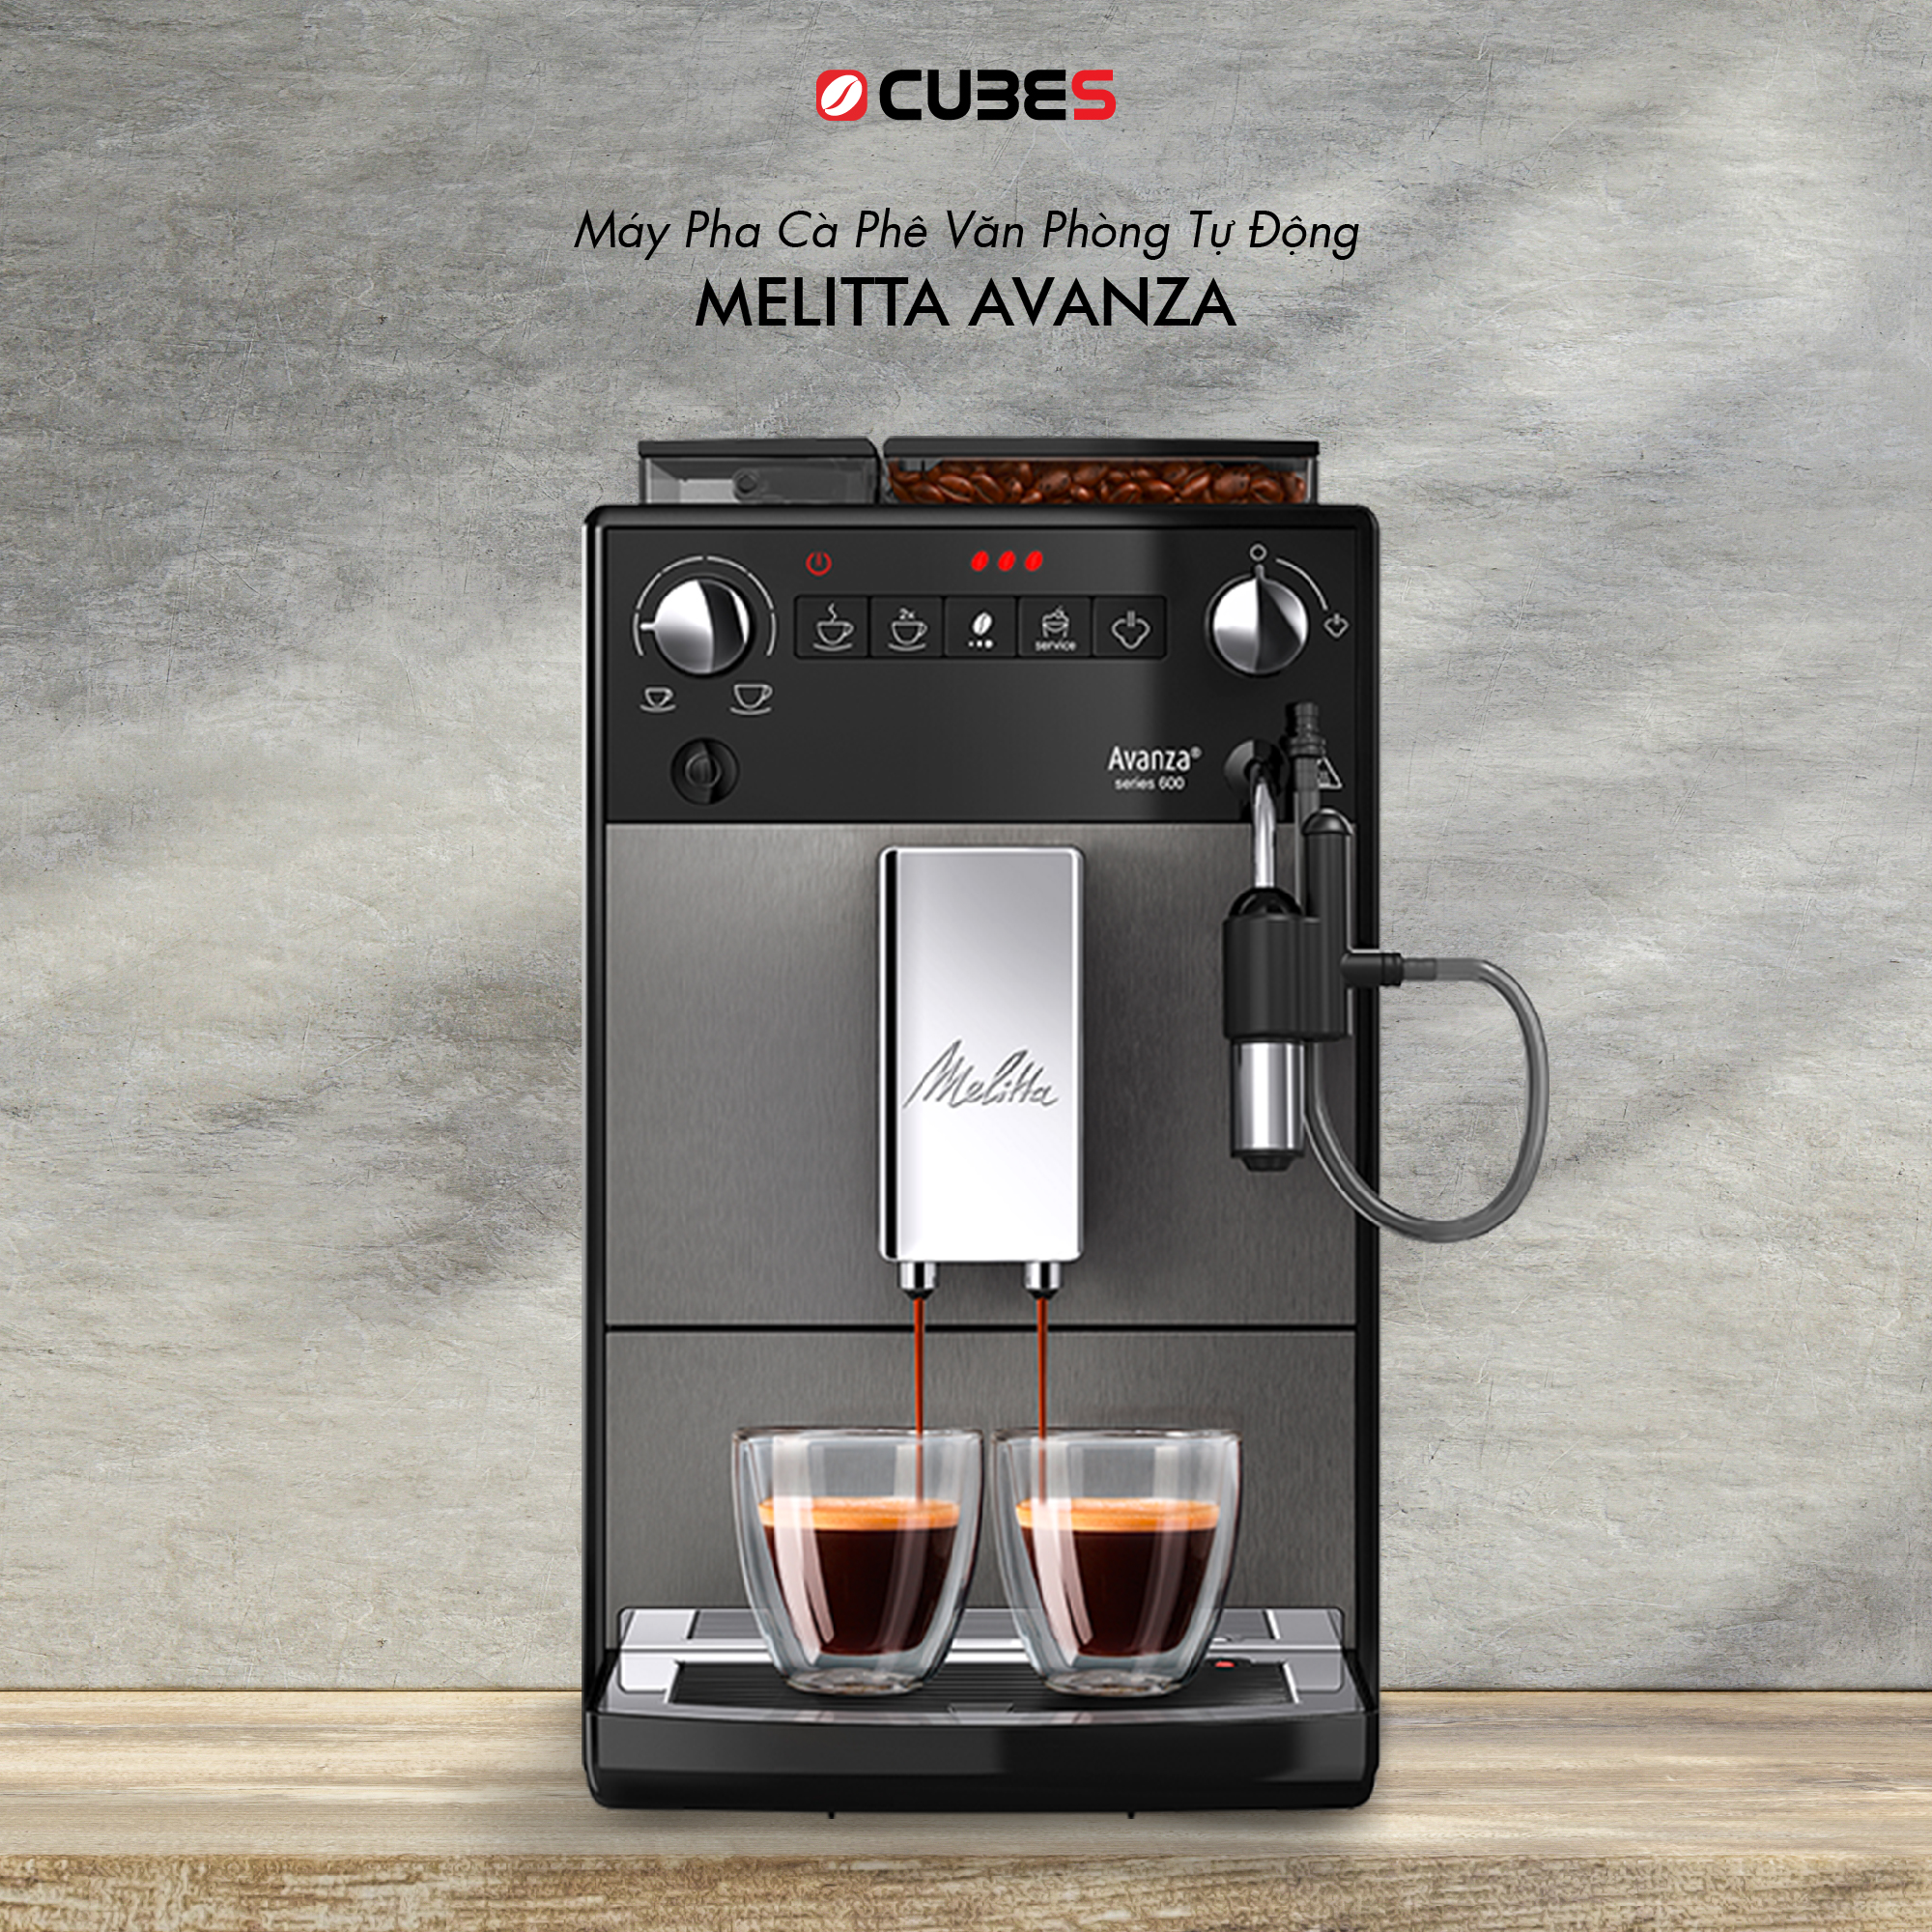 Tìm hiểu về máy pha cà phê văn phòng tự động Avanza 2022